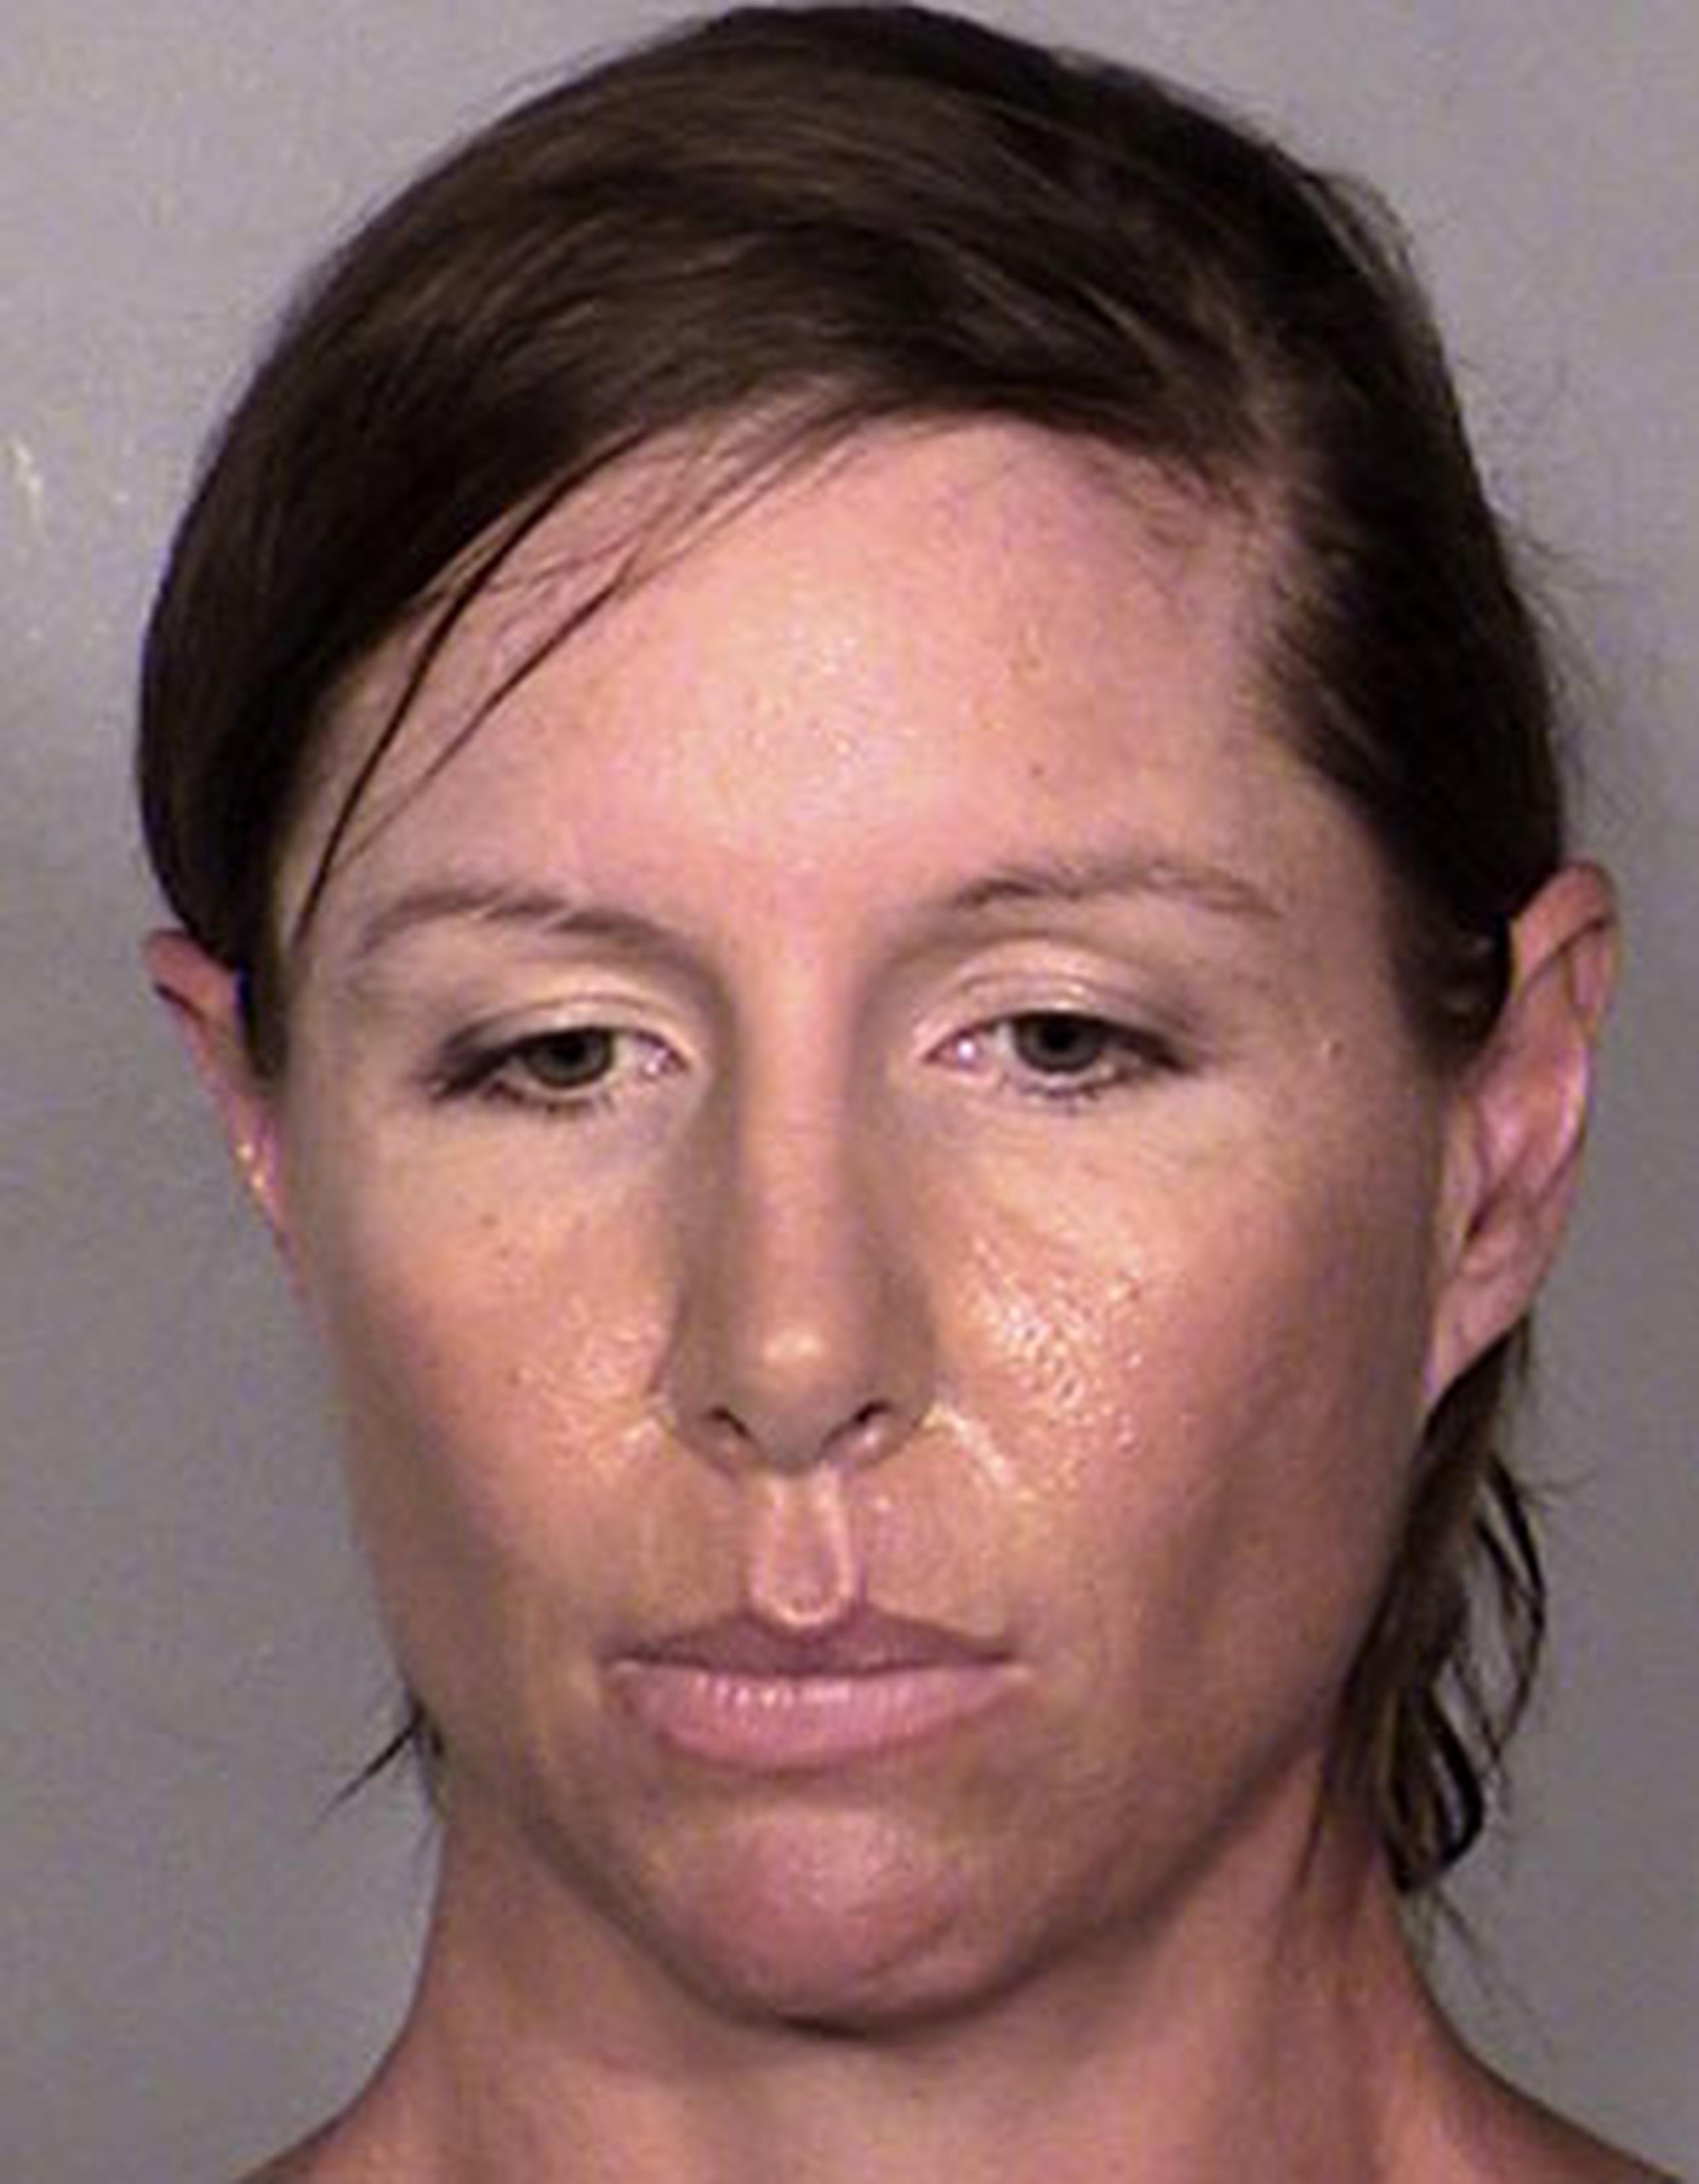 La mujer fue dejada en libertad por la policía de Las Vegas después de ser interrogada por agentes del Servicio Secreto sobre el incidente. (AP)